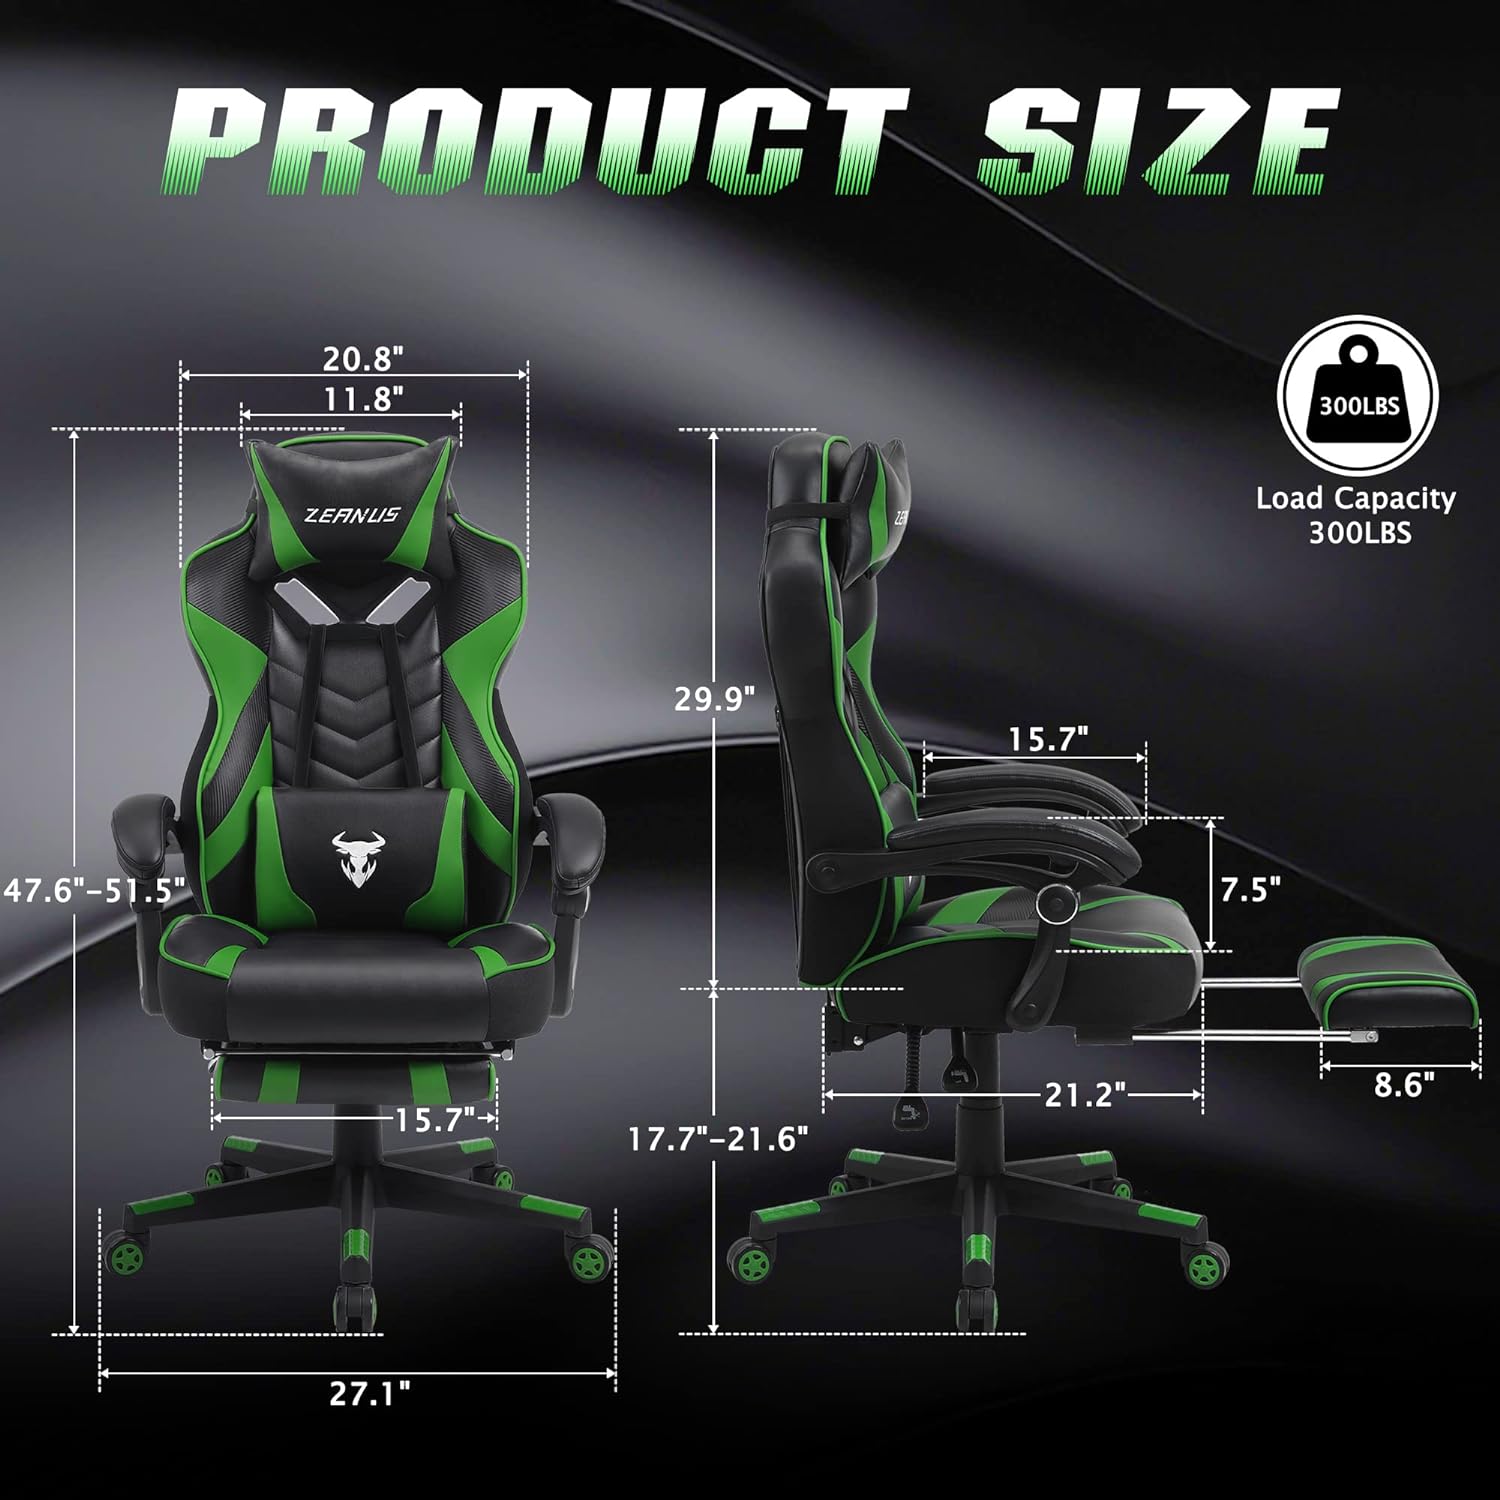 Silla de juegos verde con respaldo alto y reposapiés, silla reclinable para